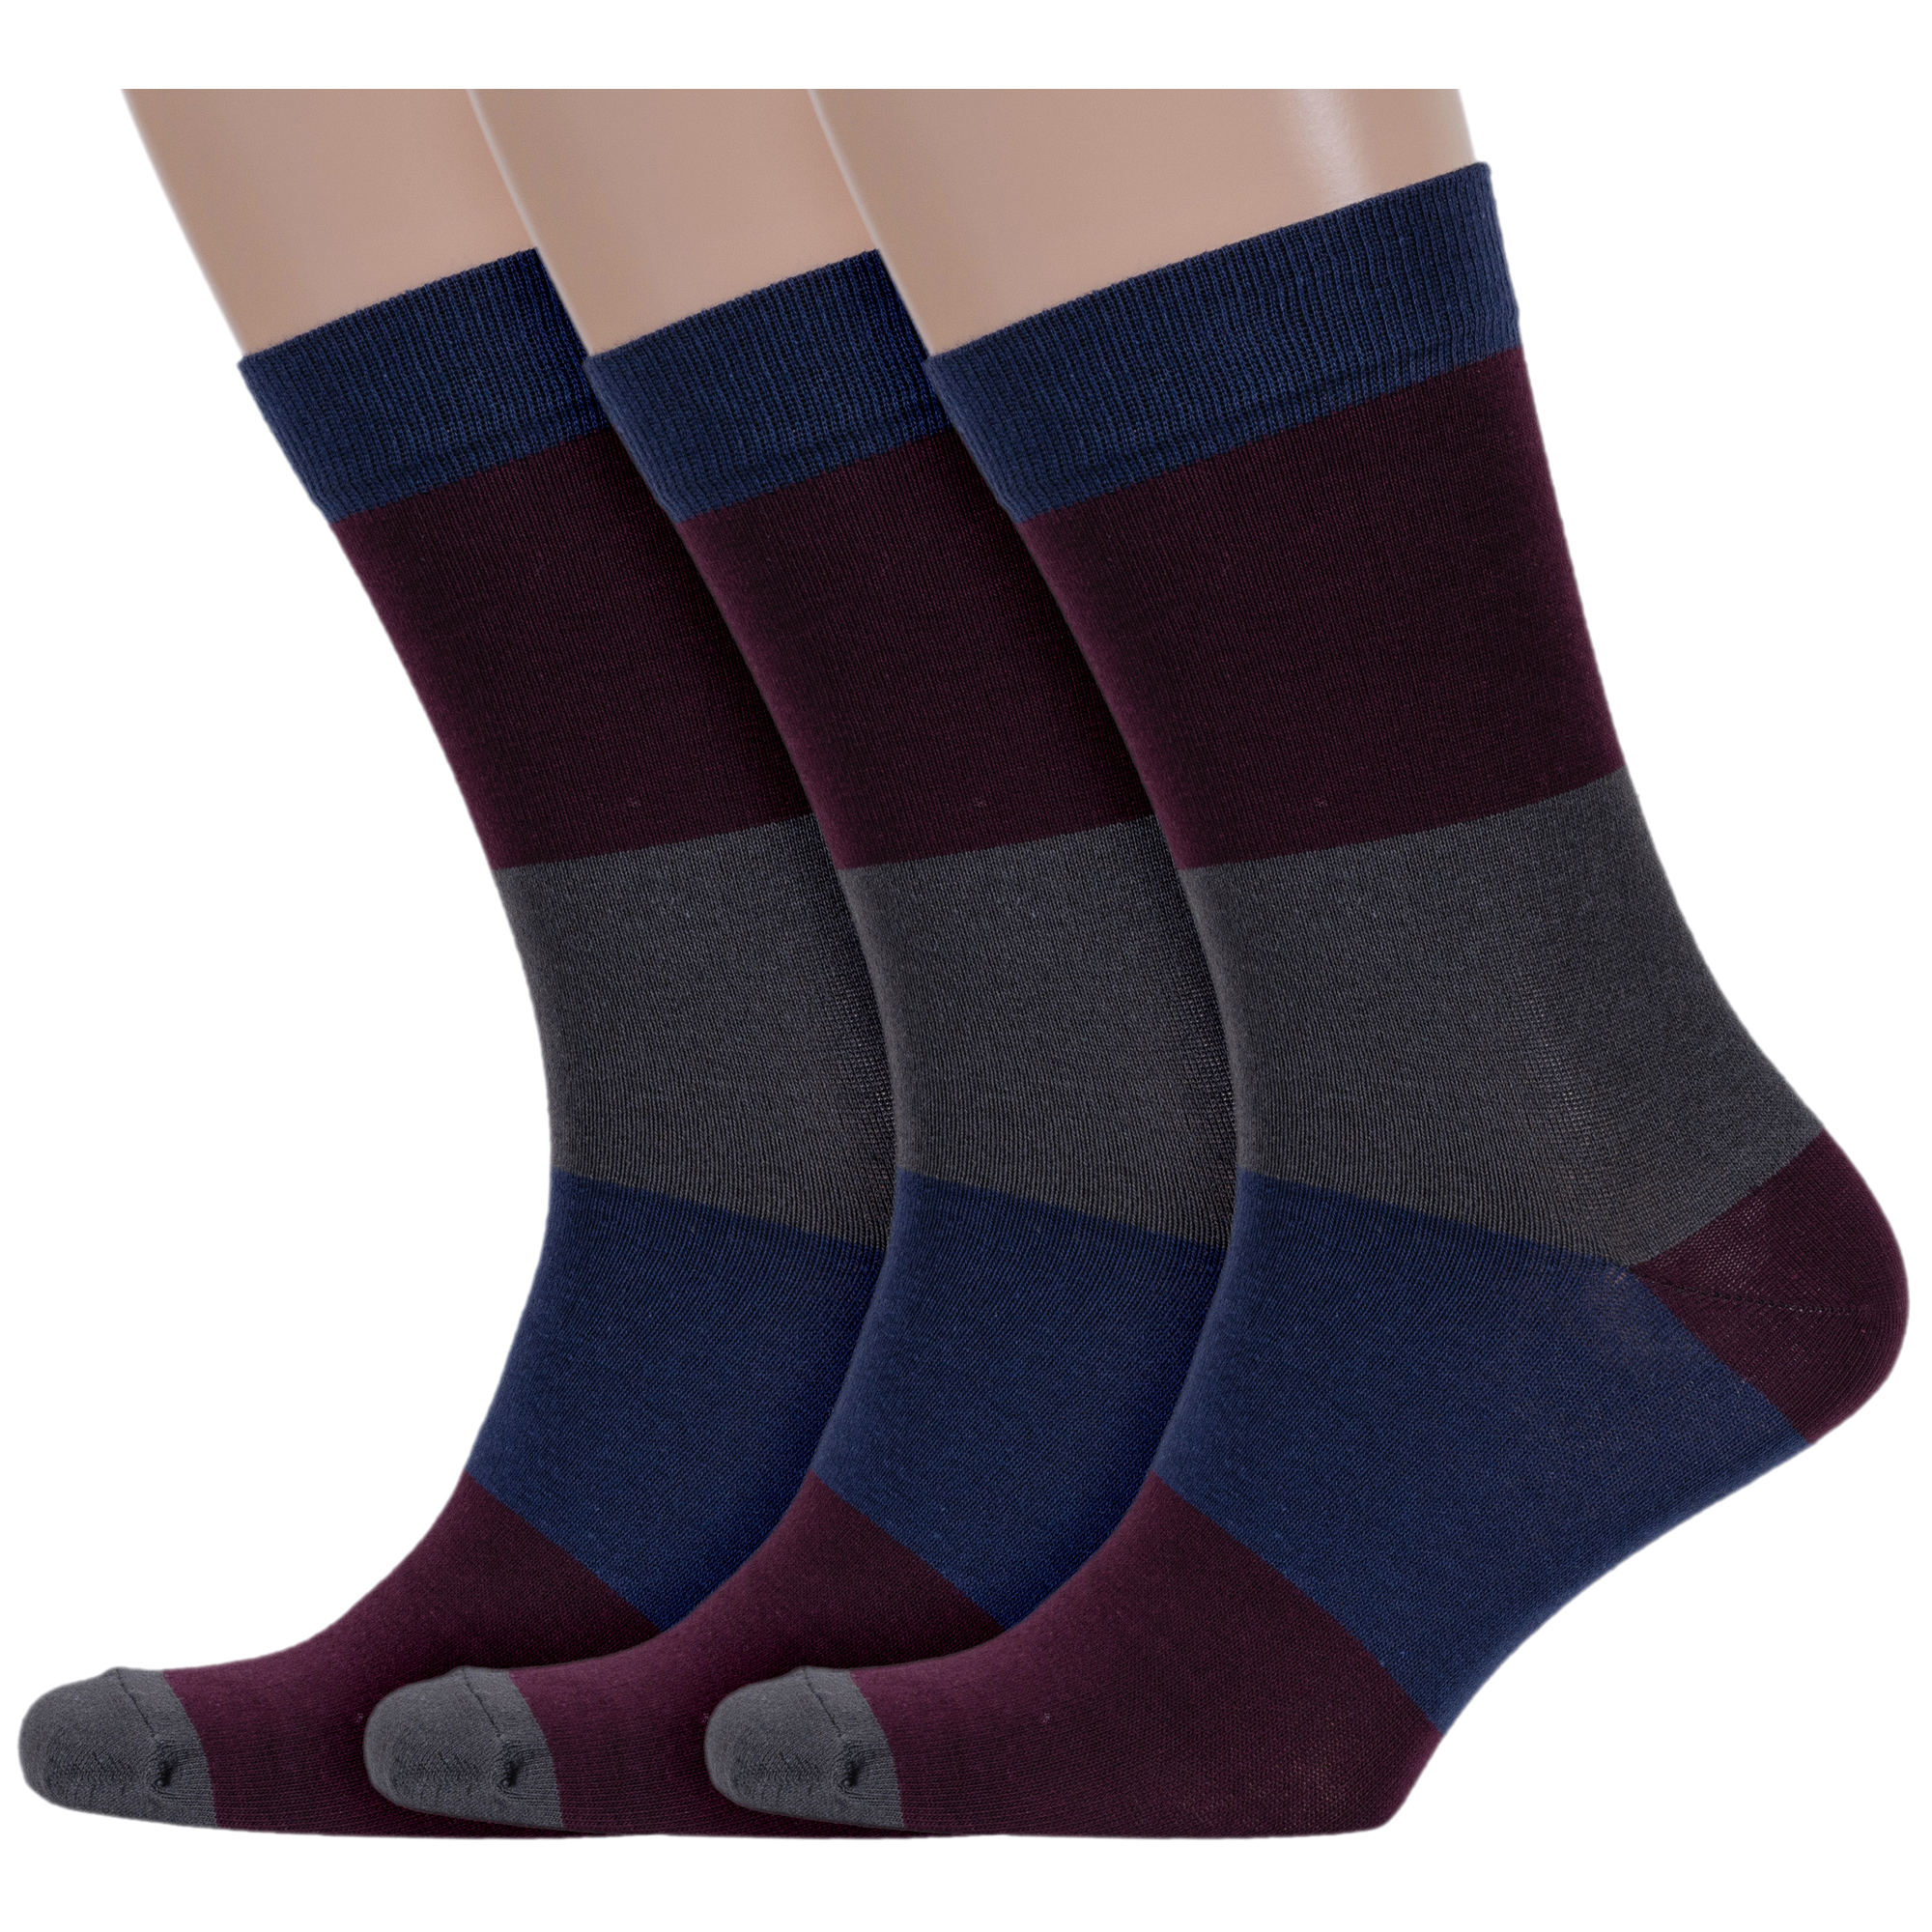 

Комплект носков мужских Борисоглебский трикотаж 3-4СМБГ разноцветных 25-27, Бордовый;синий;серый, 3-4СМБГ